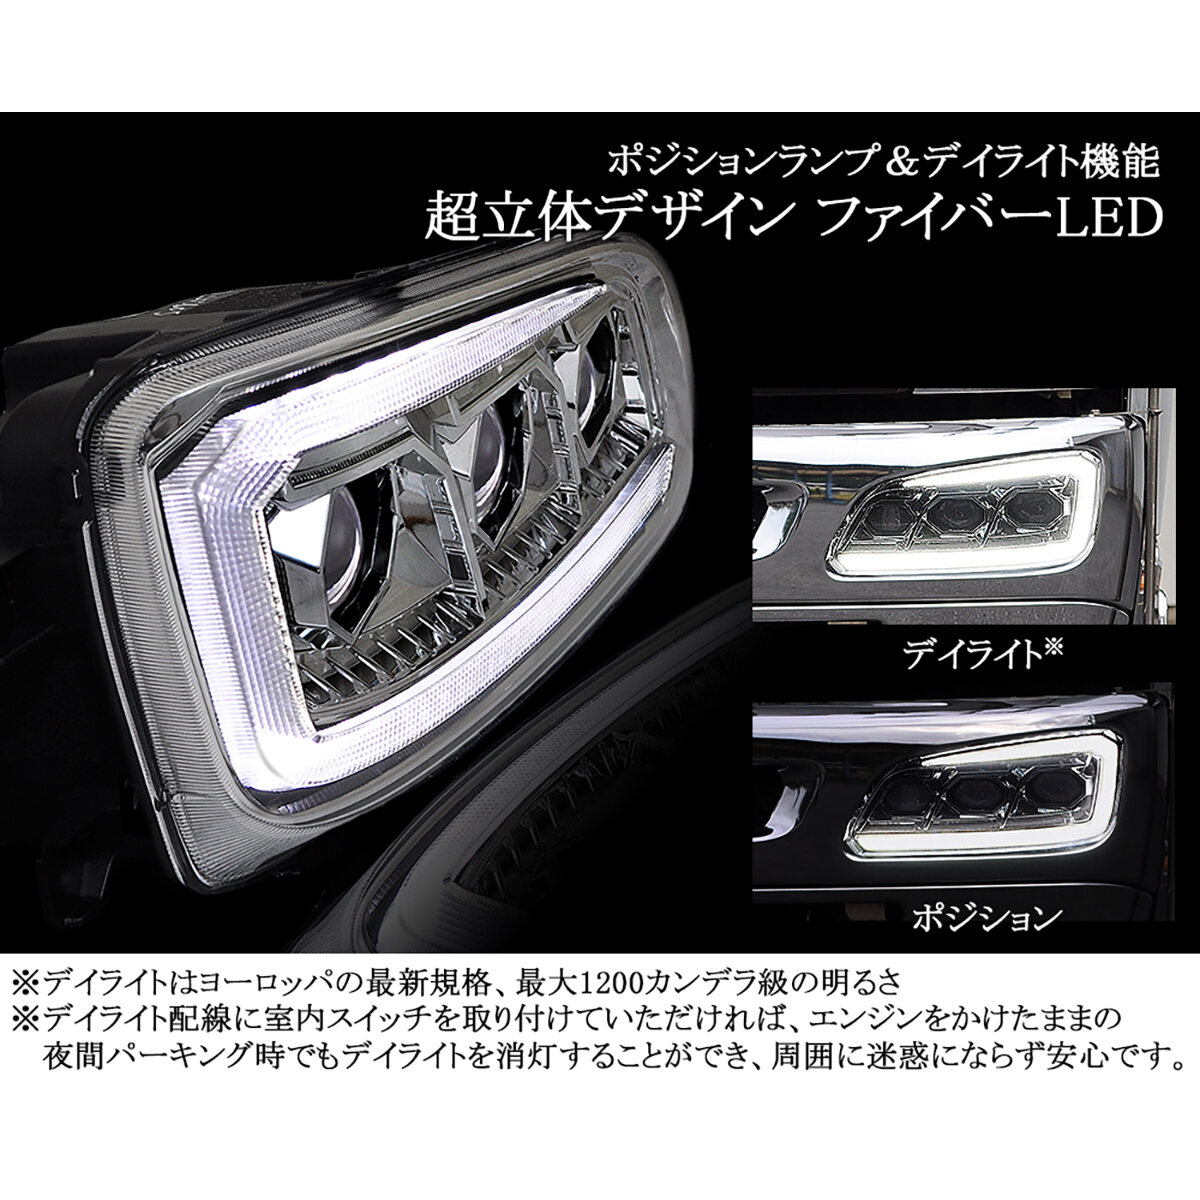 プロジェクタ―LED ヘッドライト＆クロームウインカーセット ファイバーLEDシーケンシャルタイプ